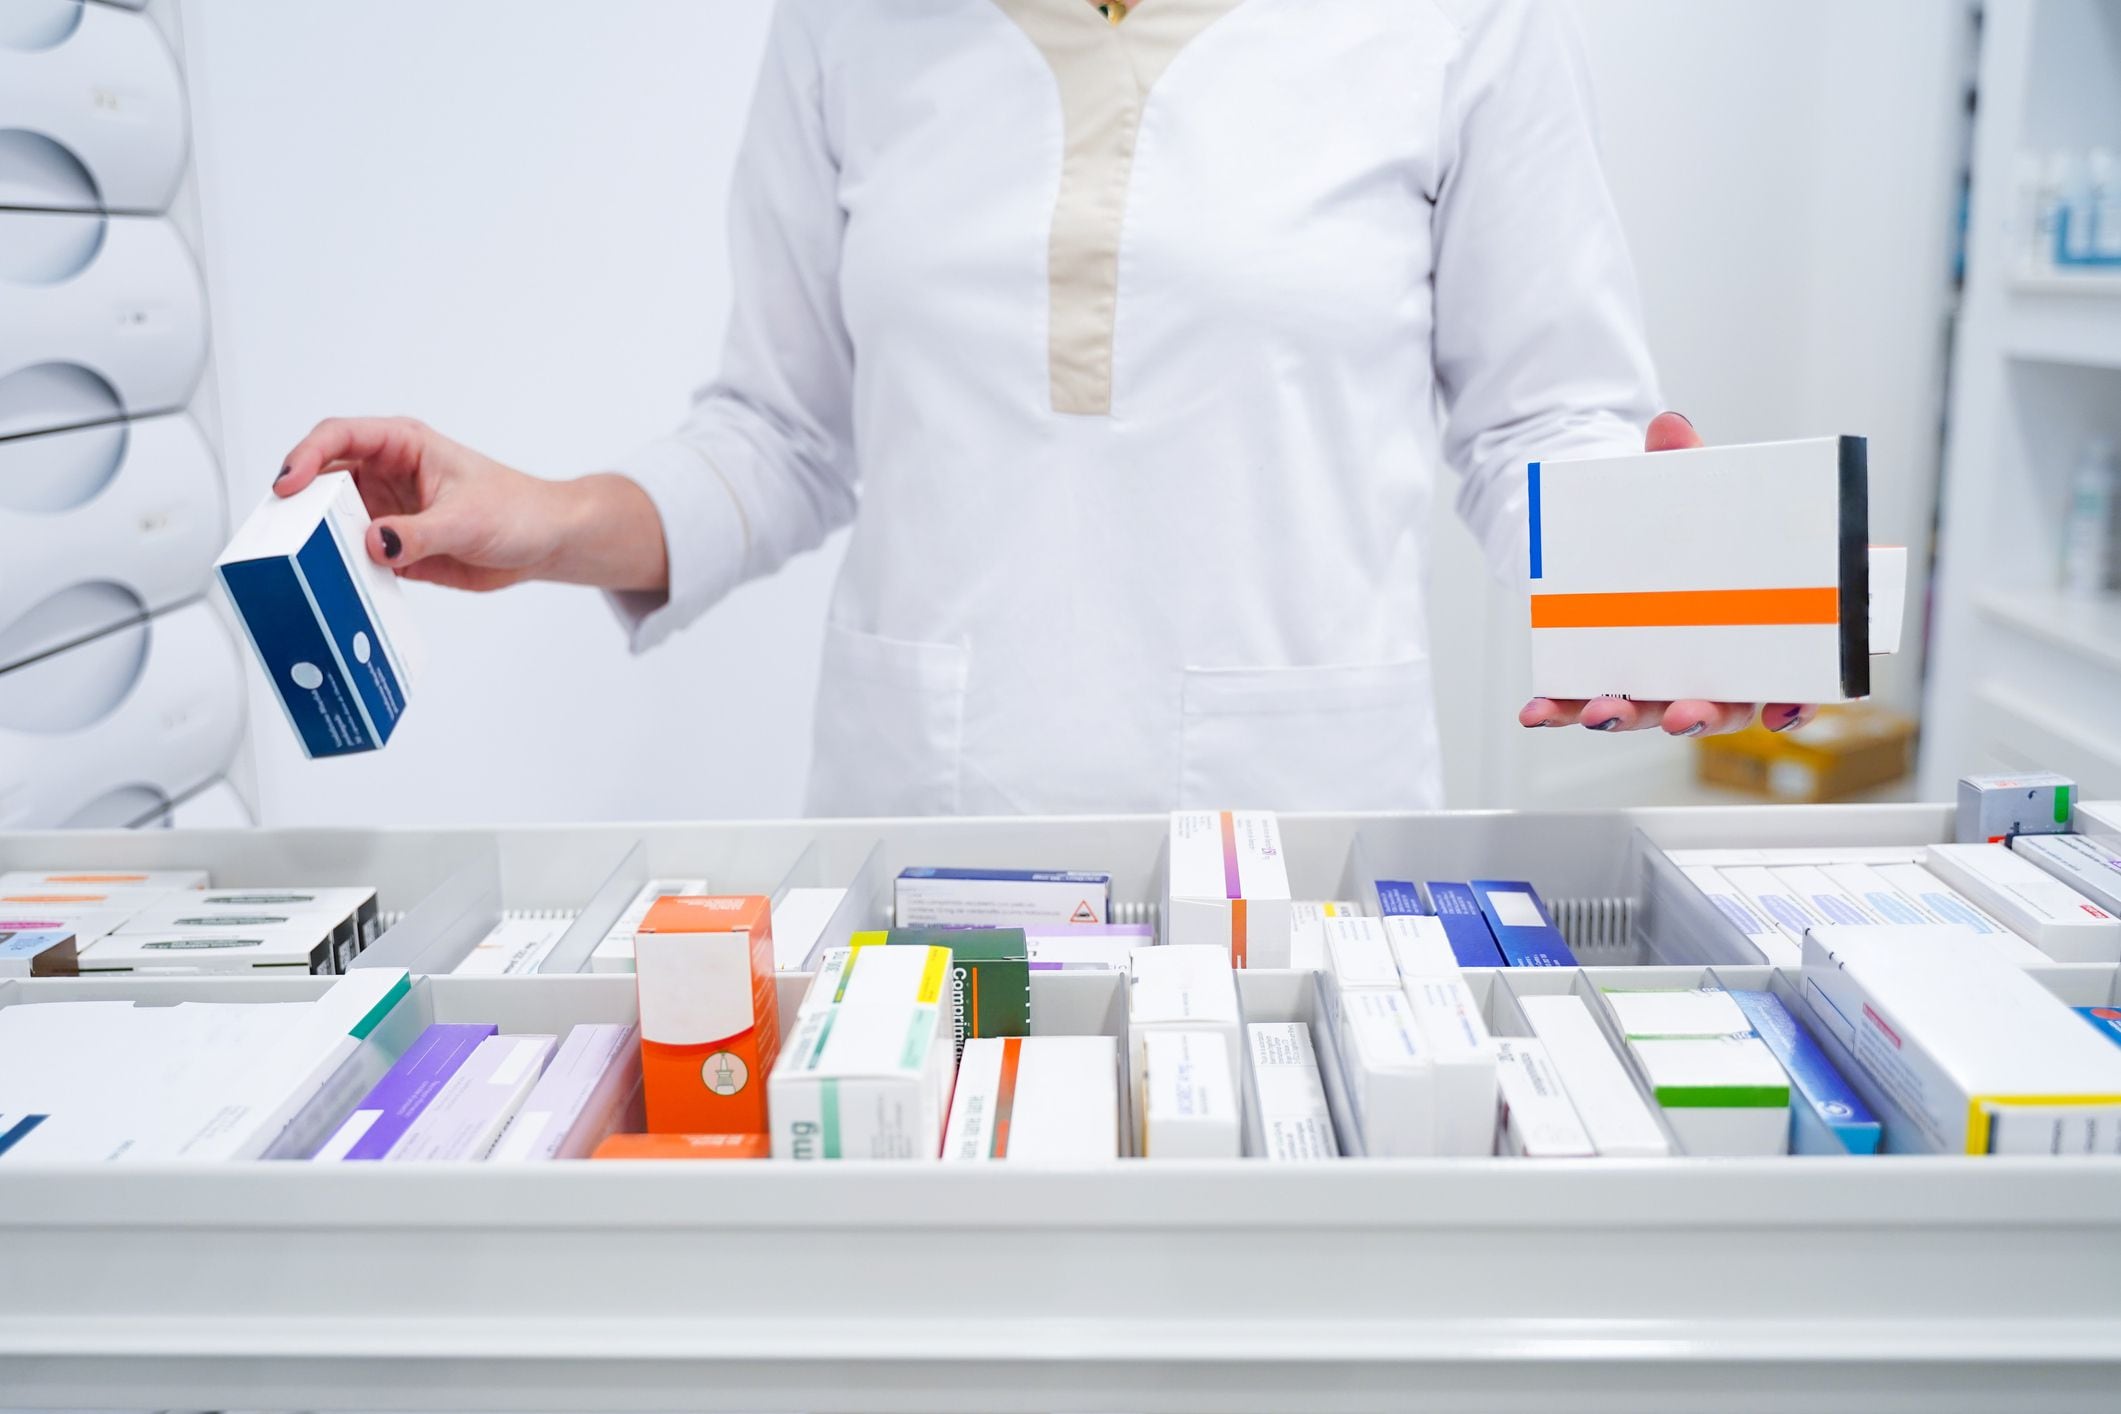 Industria farmacéutica colombiana provee el 84% de medicamentos, no hemos parado: Ascif